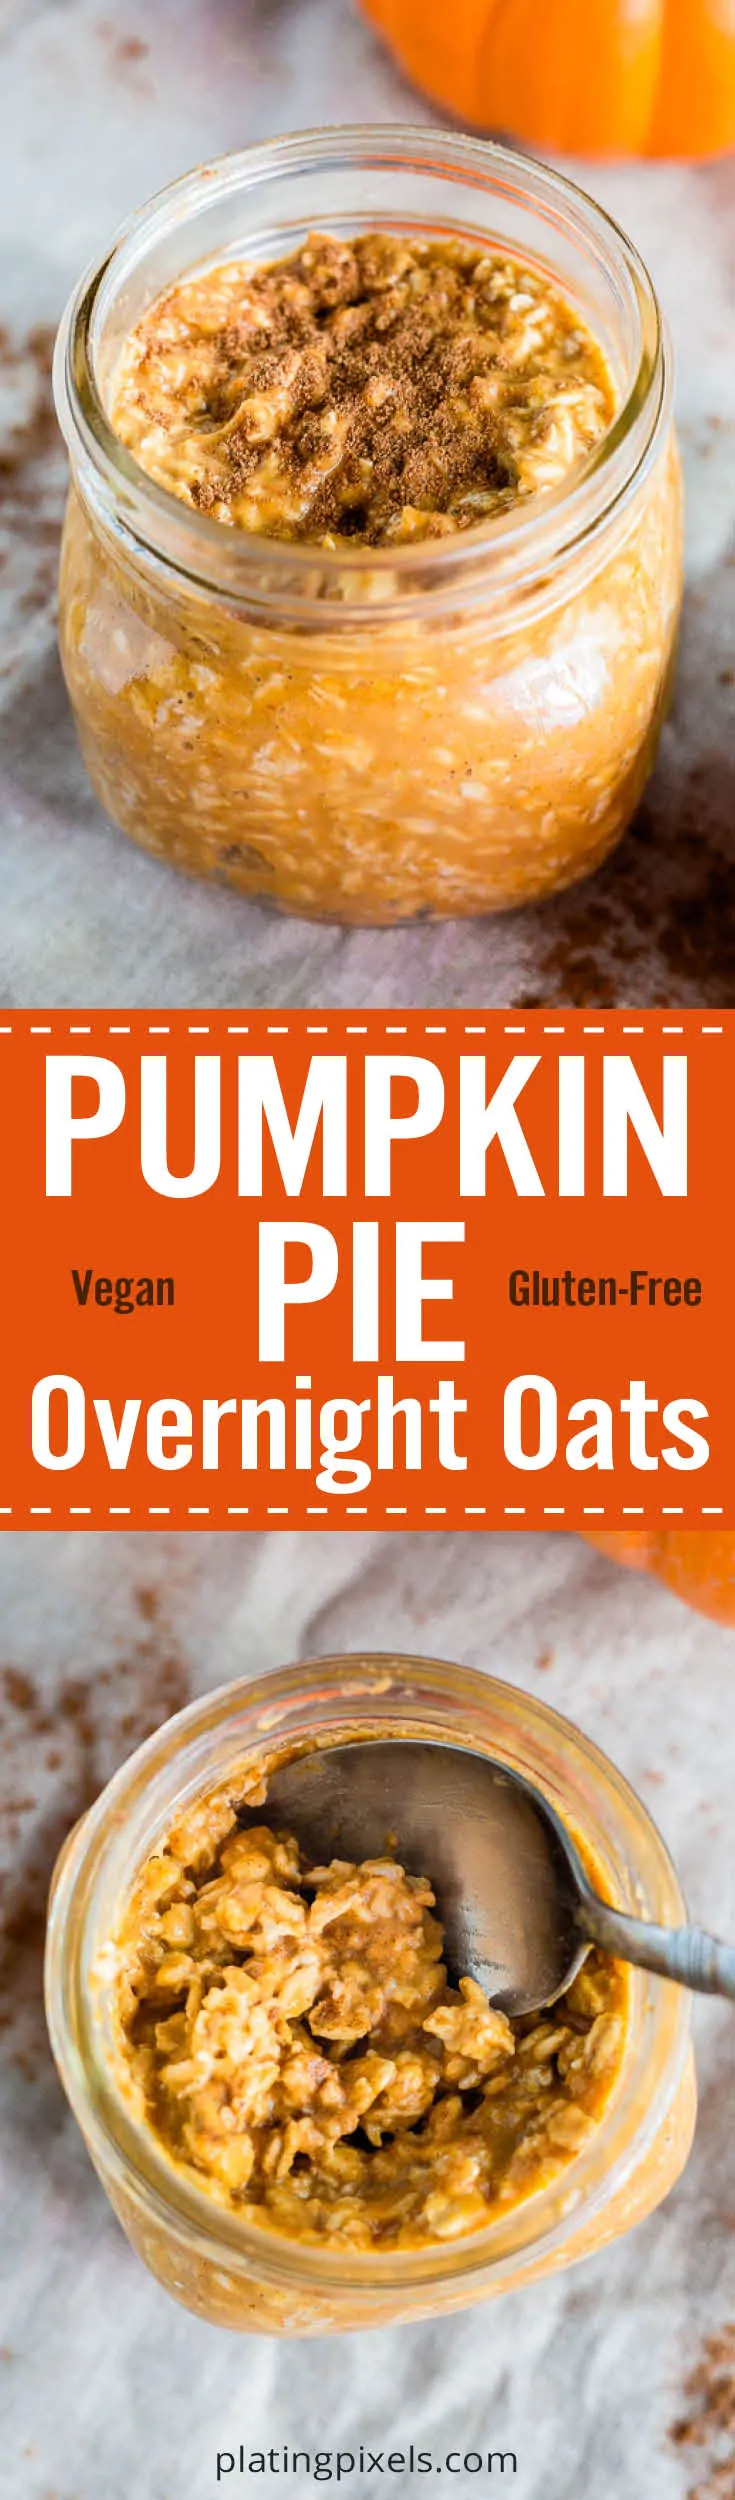 Vegan Pumpkin Pie Overnight Oats